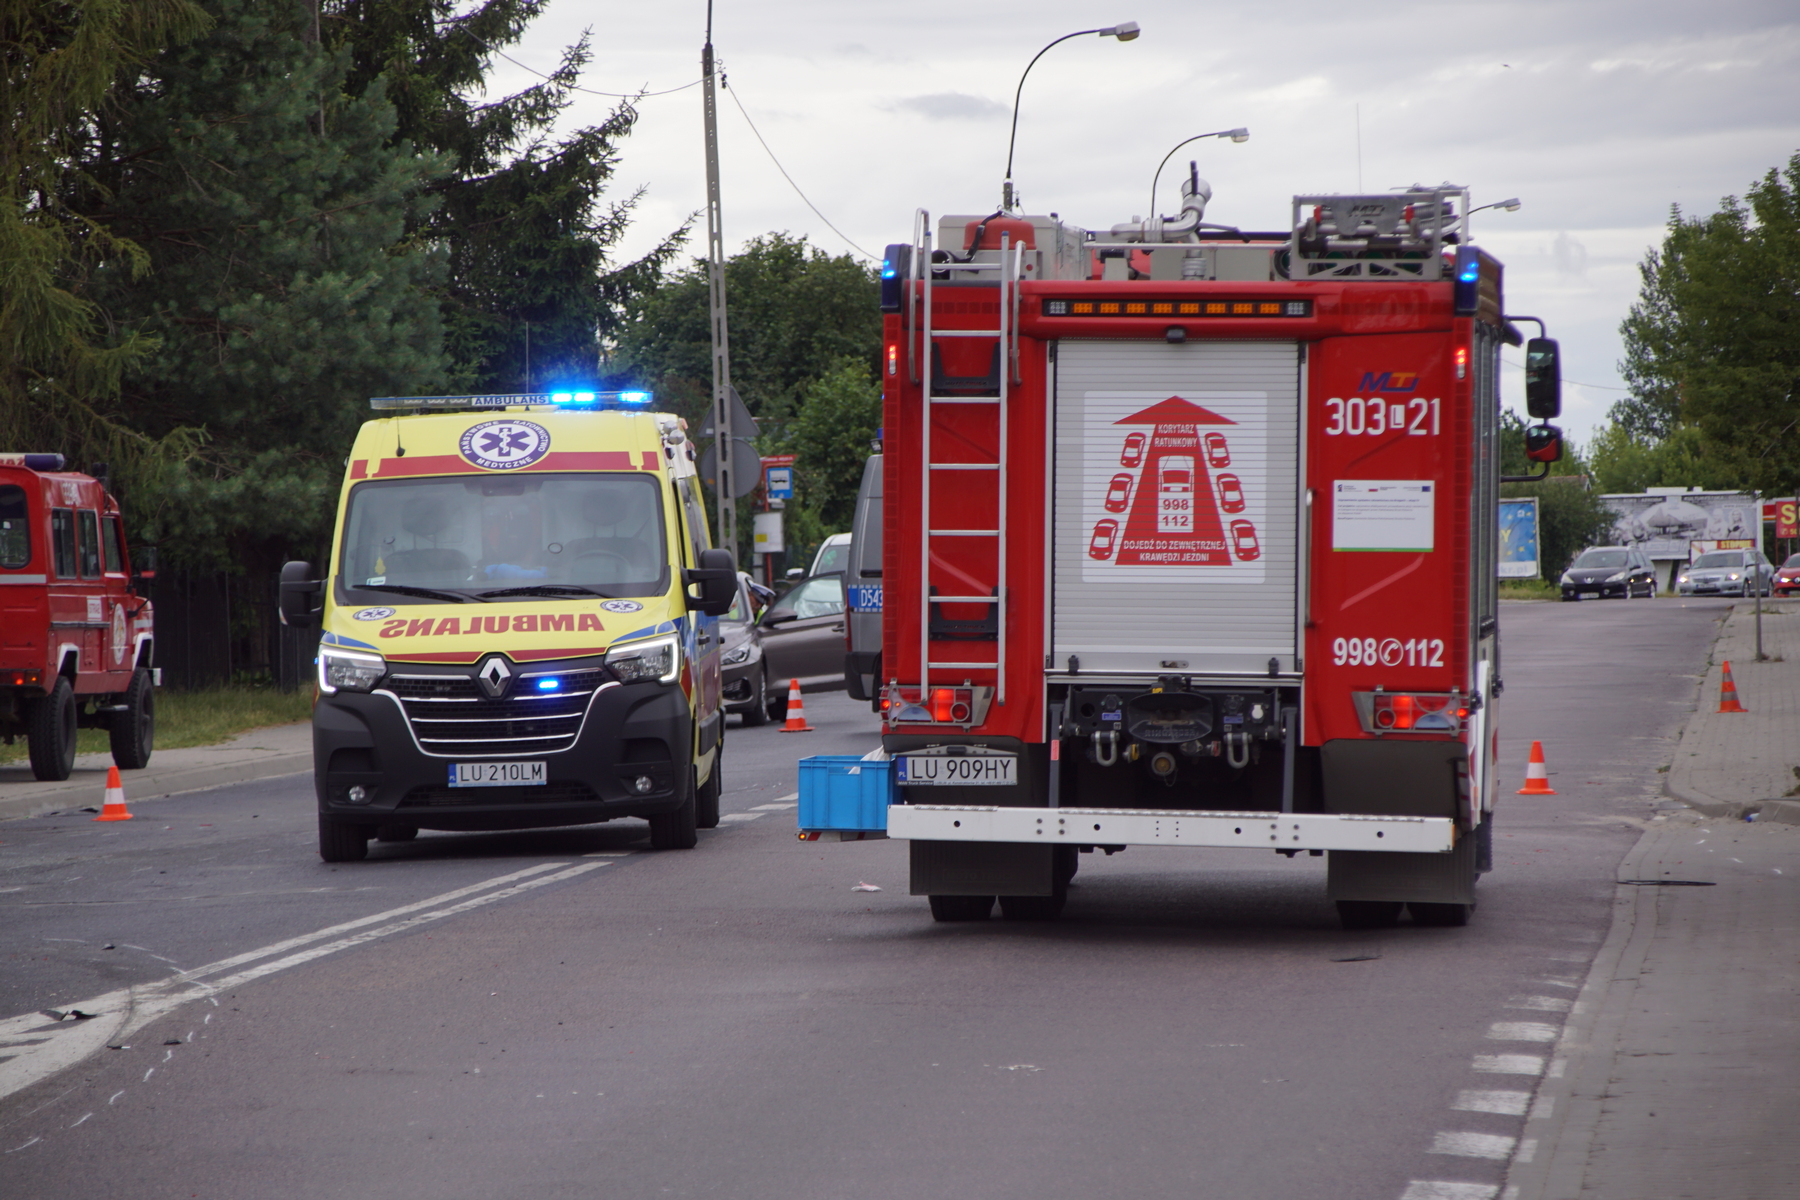 Utrudnienia w ruchu na ul. Turystycznej po zderzeniu audi z volkswagenem. Trzy osoby trafiły do szpitala (zdjęcia)